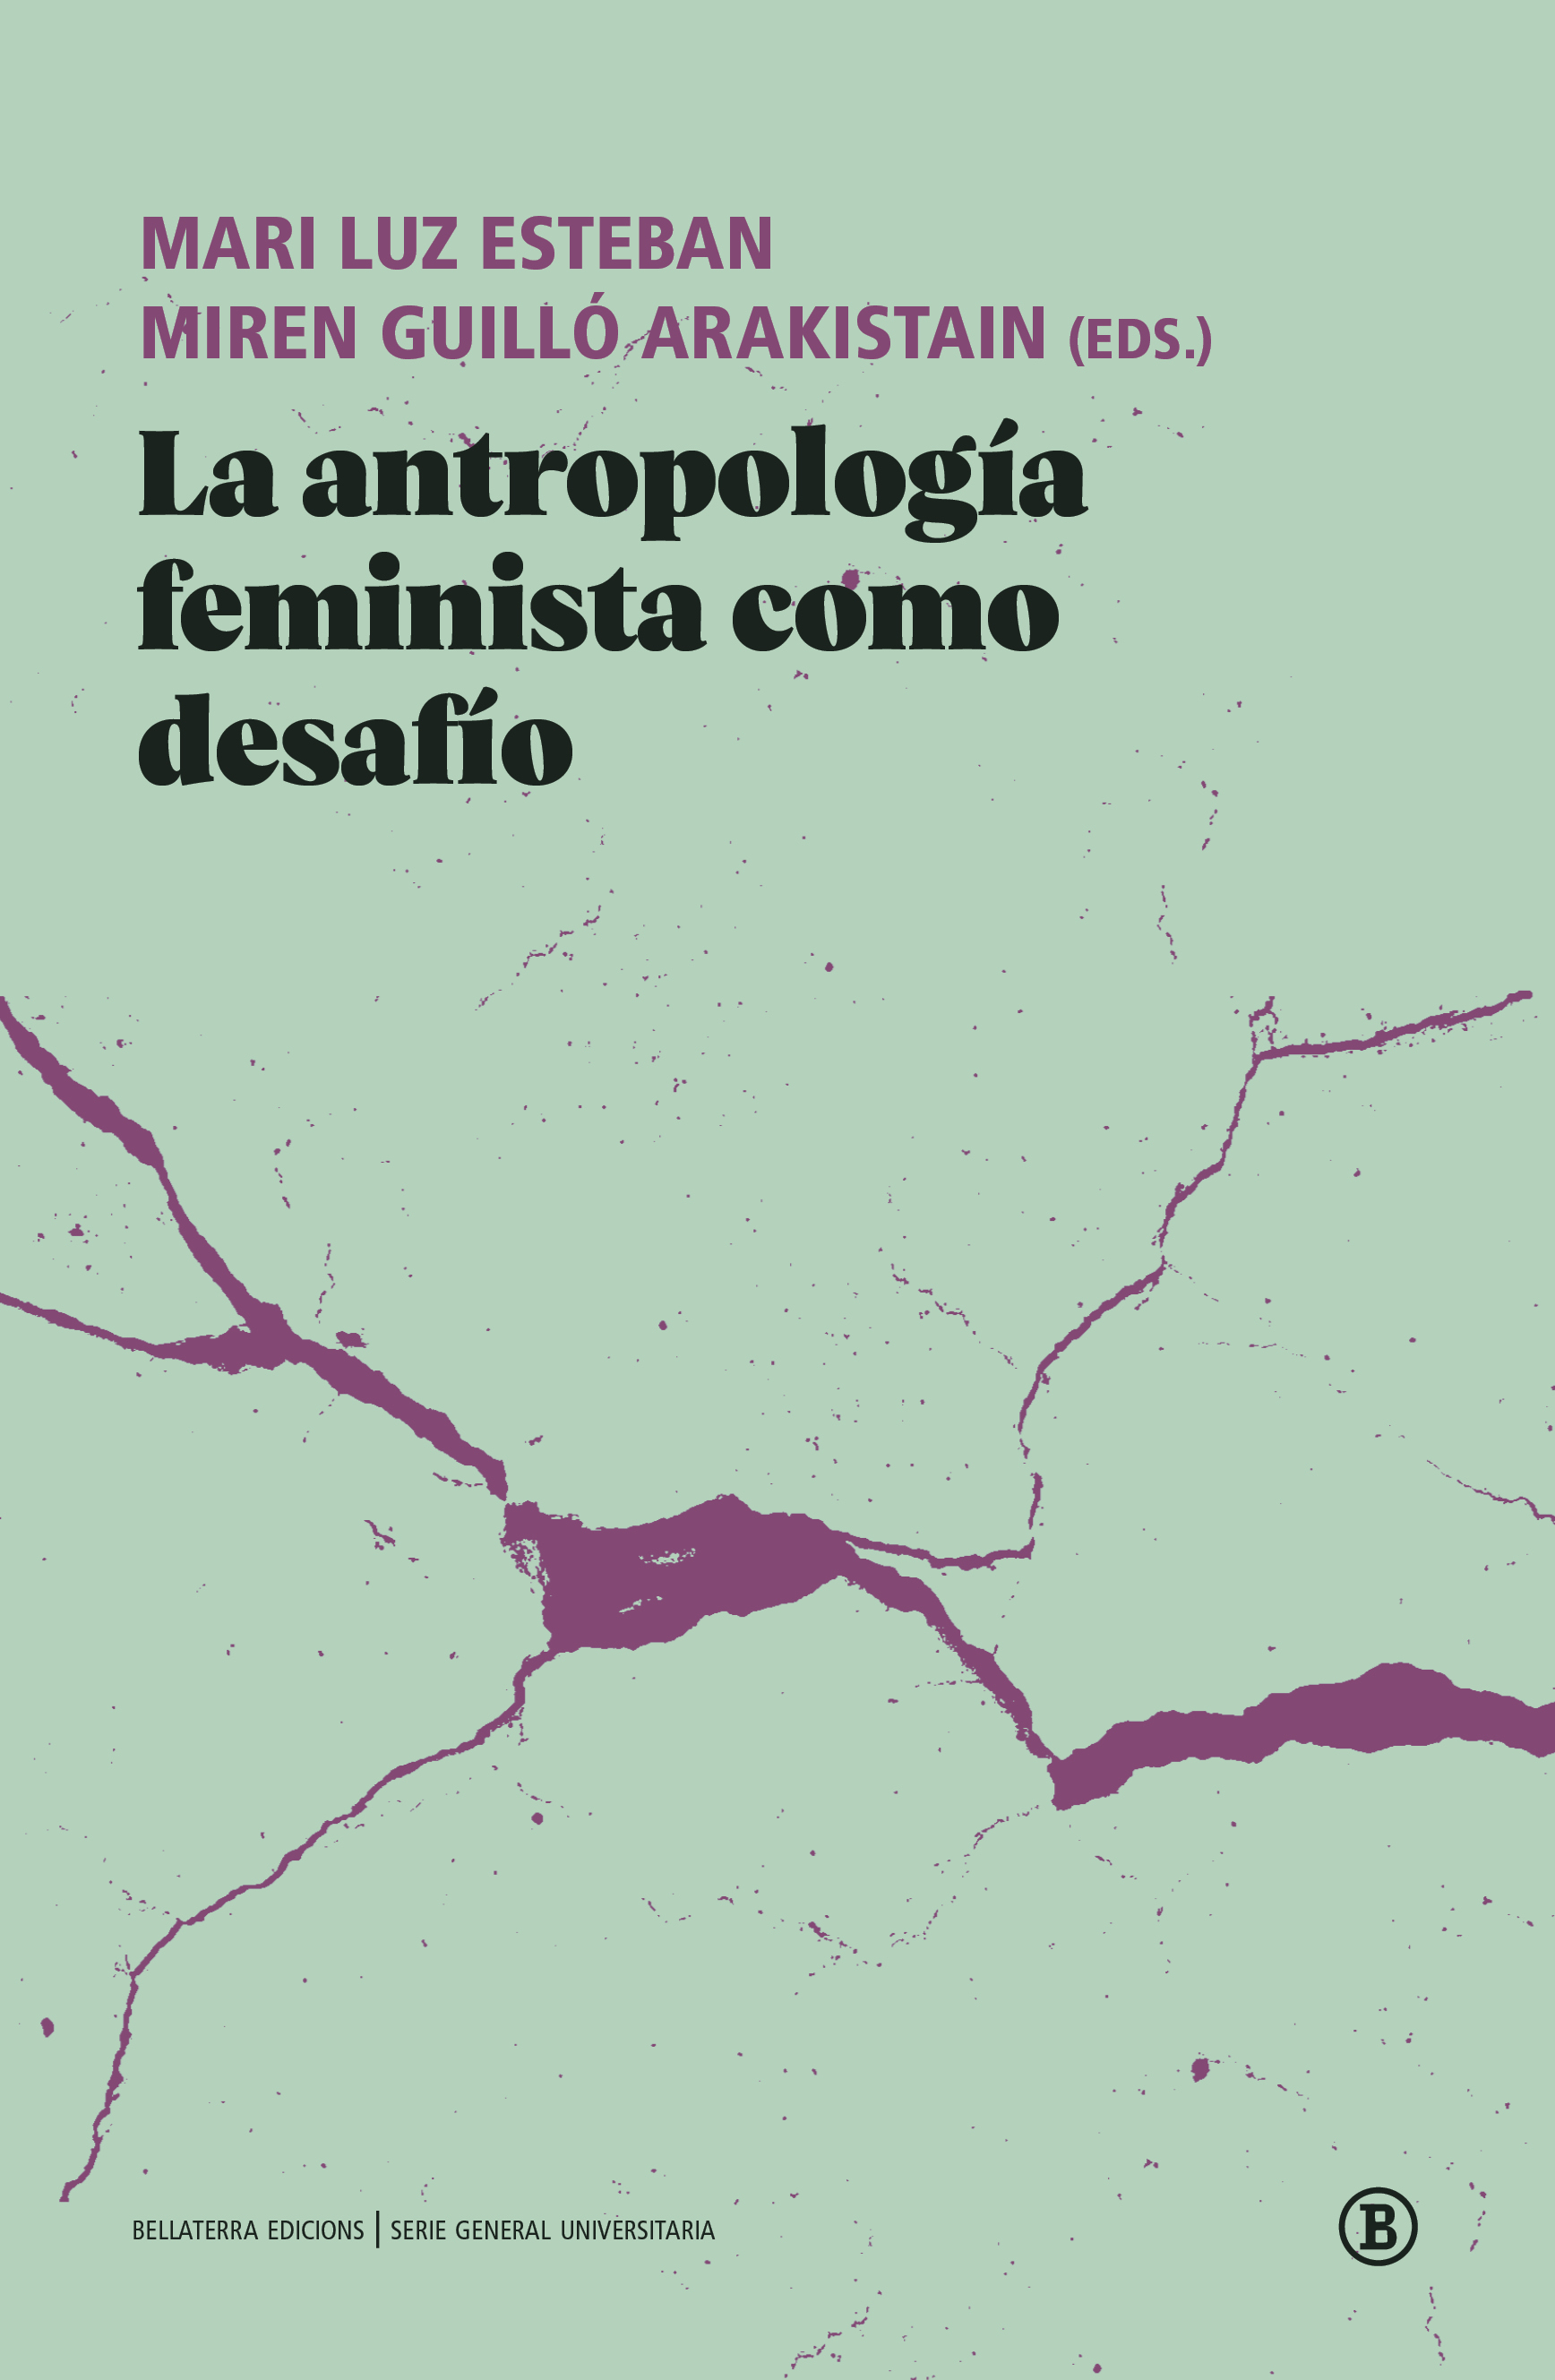 La antropología feminista como desafío - Mari Luz Esteban | Miren Guilló Arakistain